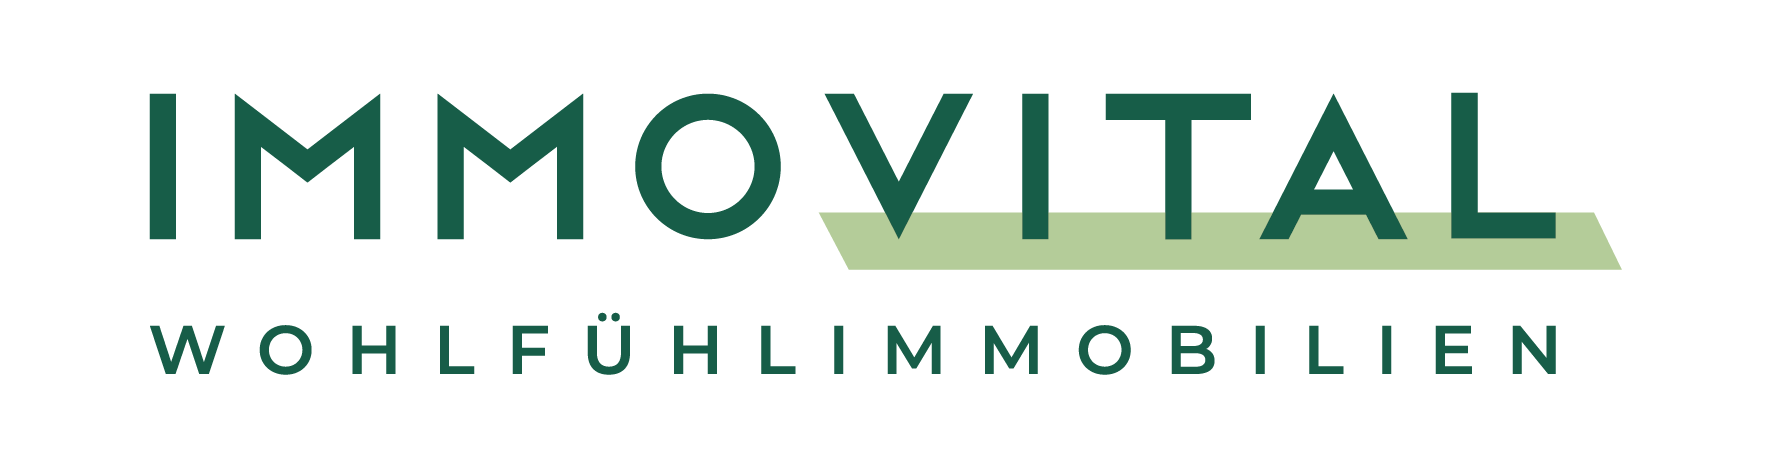 ImmoVital Wohlfühlimmobilien GmbH